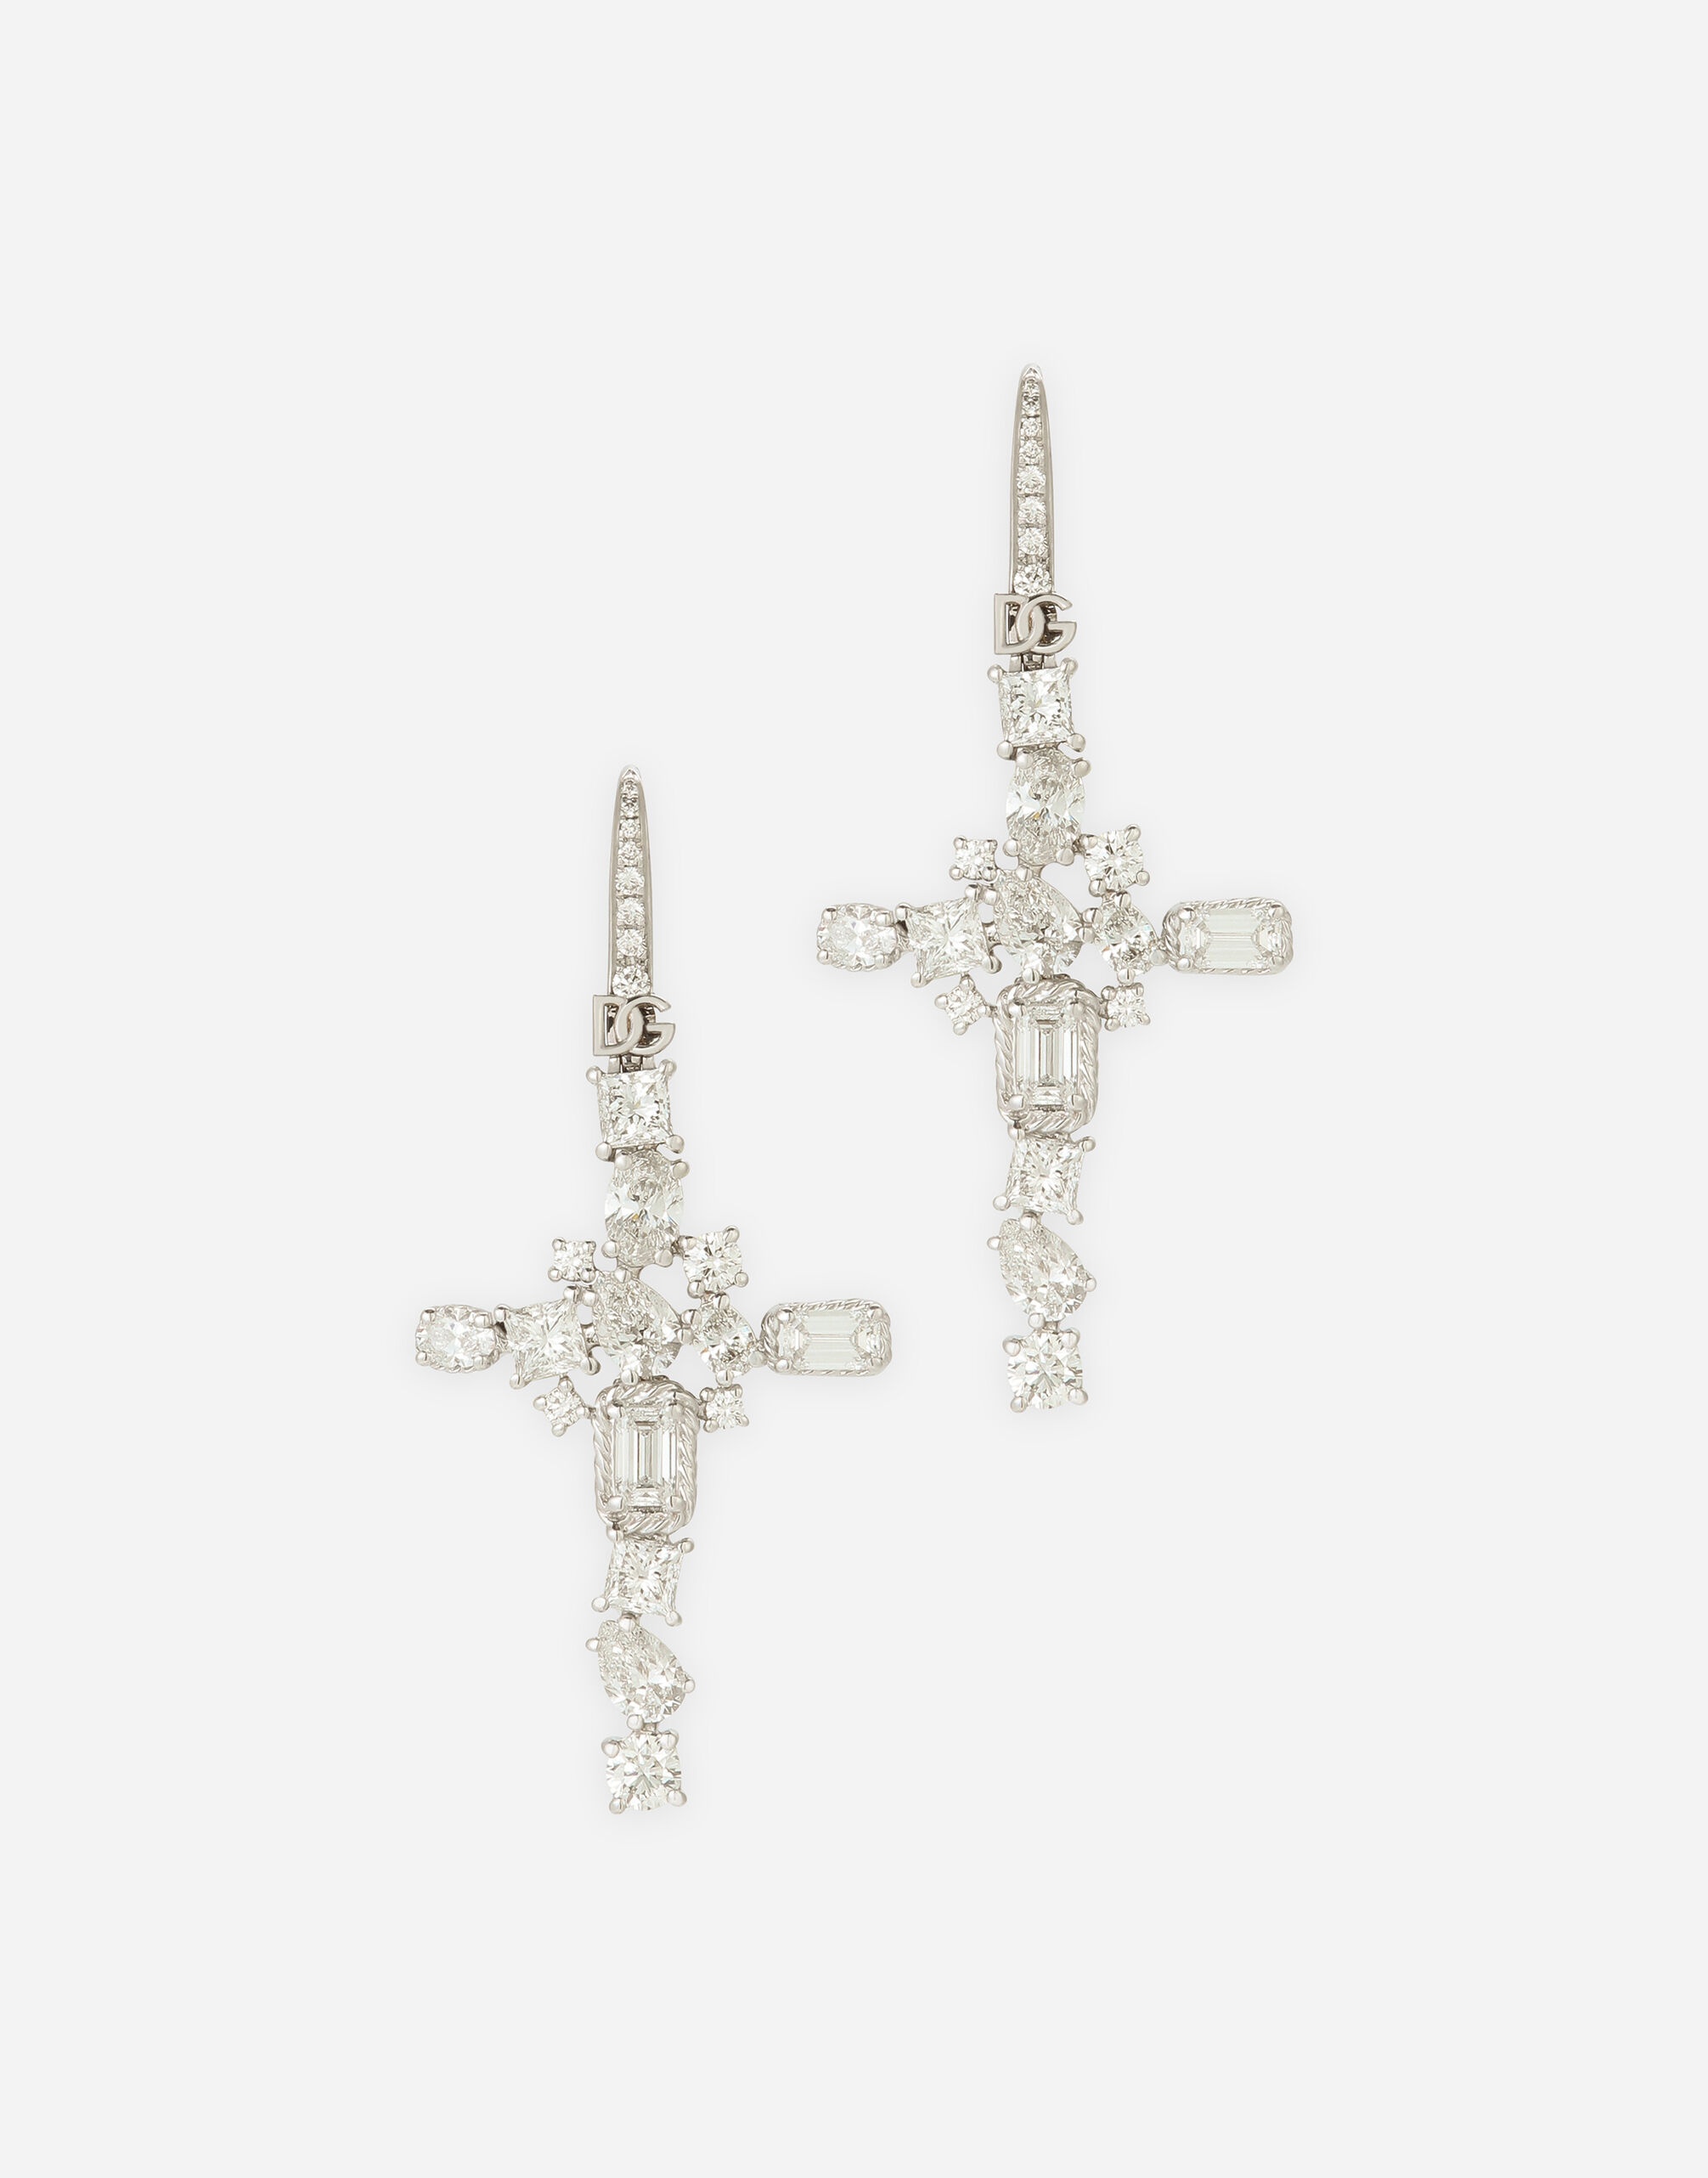 Easy Diamond earrings in white gold 18Kt diamonds - 1